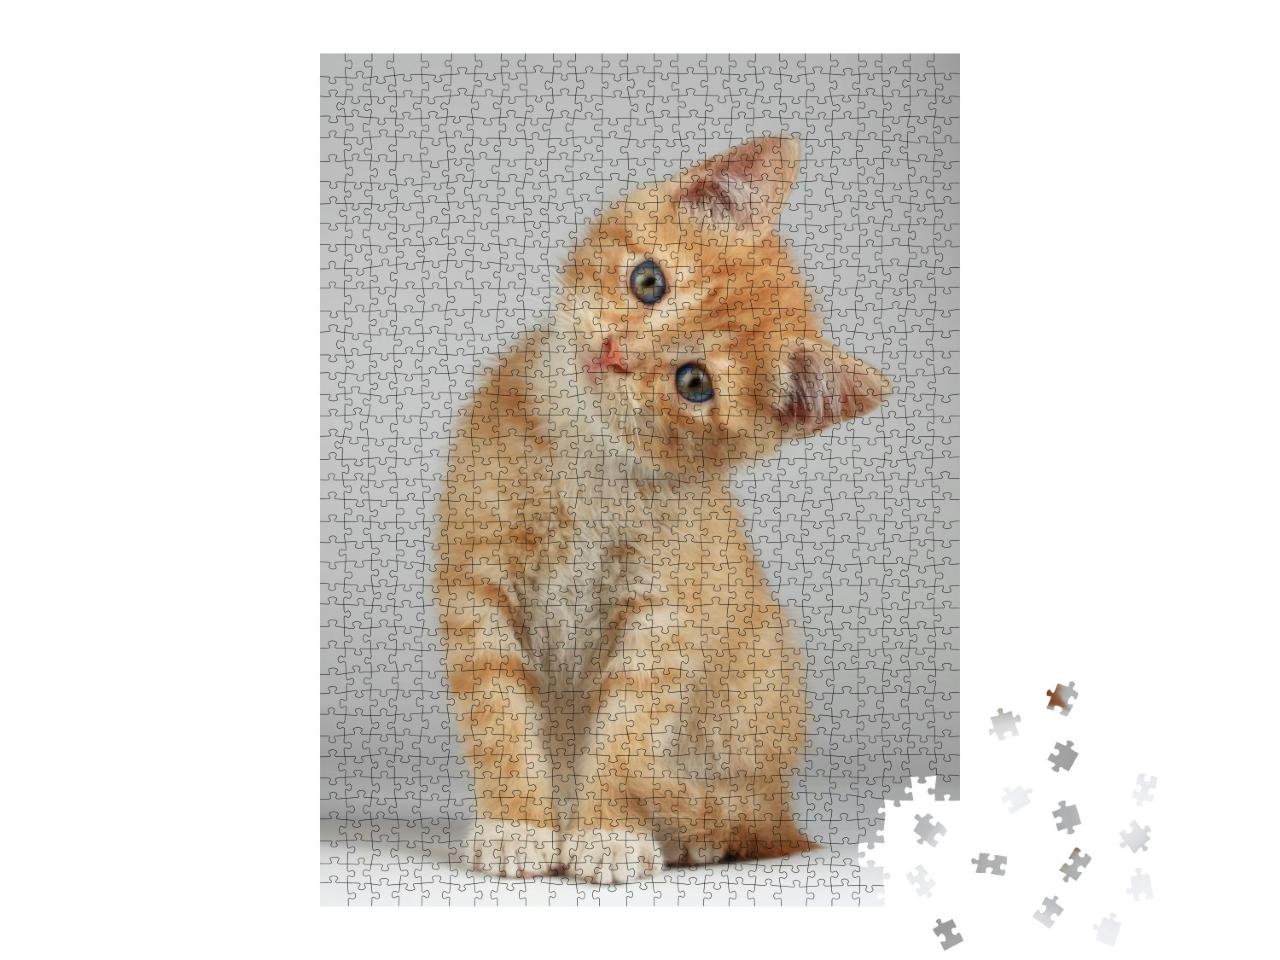 Puzzle 1000 Teile „Niedliches kleines Kätzchen“